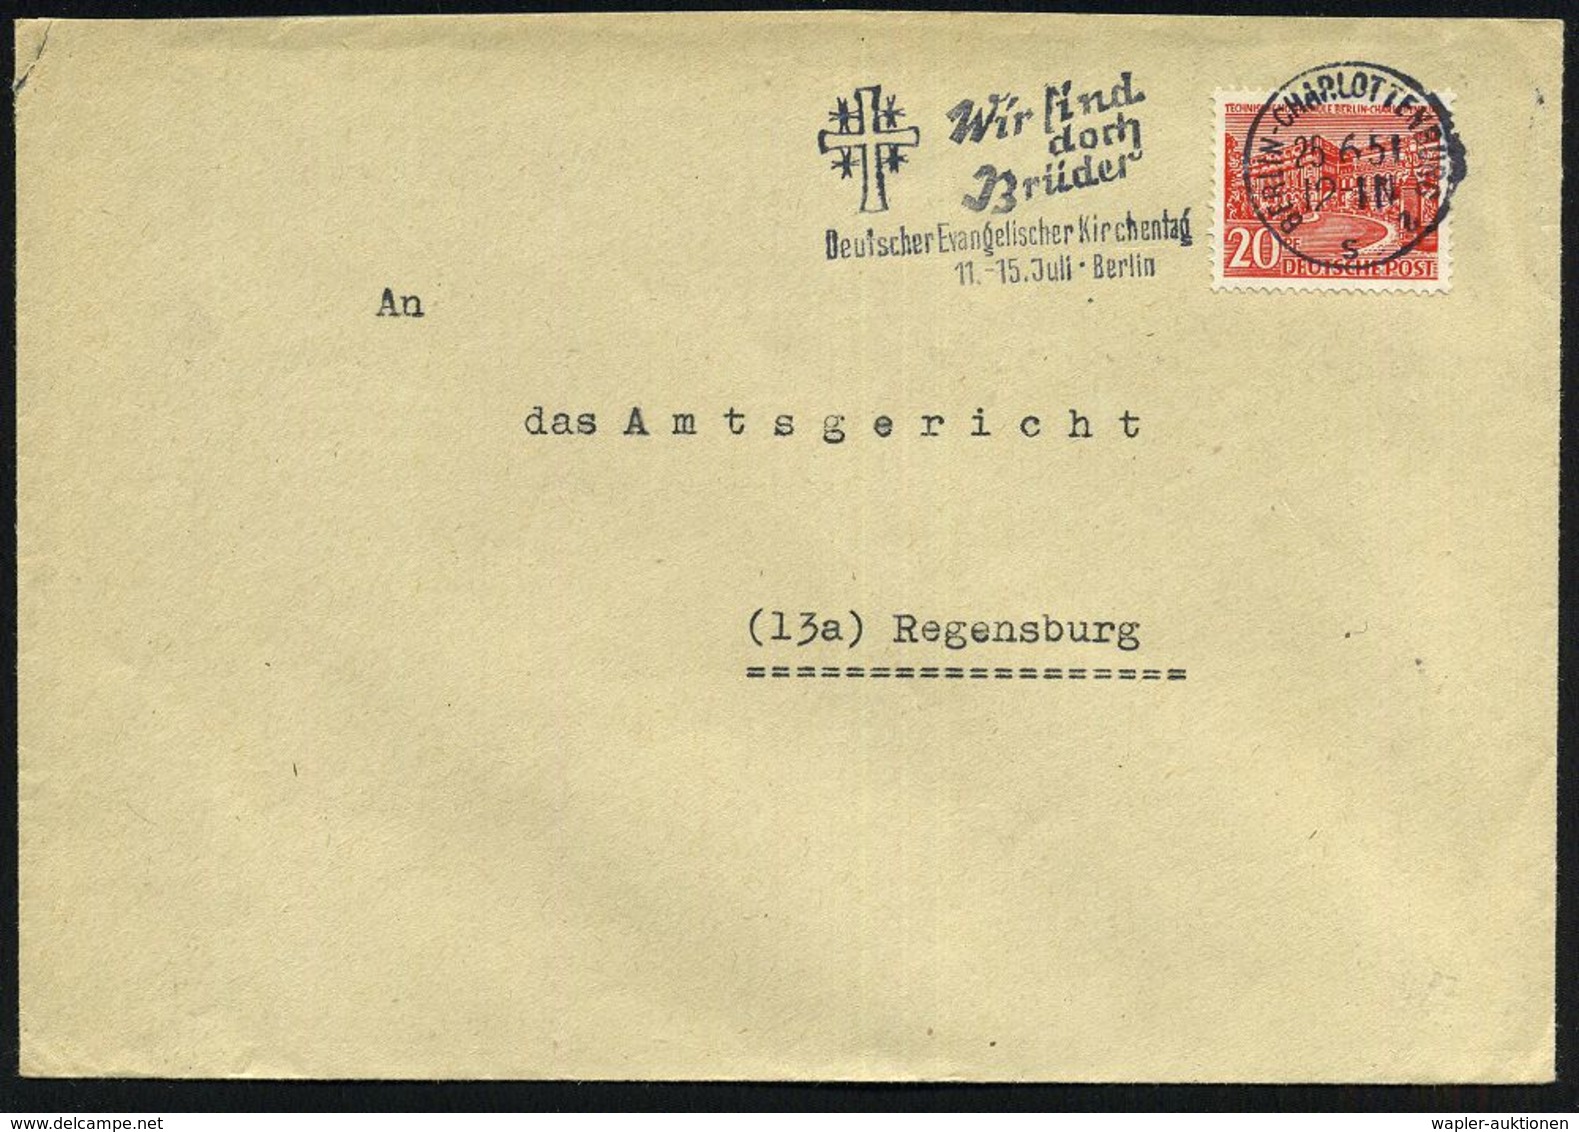 BERLIN-CHARLOTTENBURG 2/ S/ Wir Sind/ Doch/ Brüder/ Deutscher Evangel.Kirchentag 1951 (25.6.) MWSt = Jerusalem-Kreuz , K - Cristianesimo